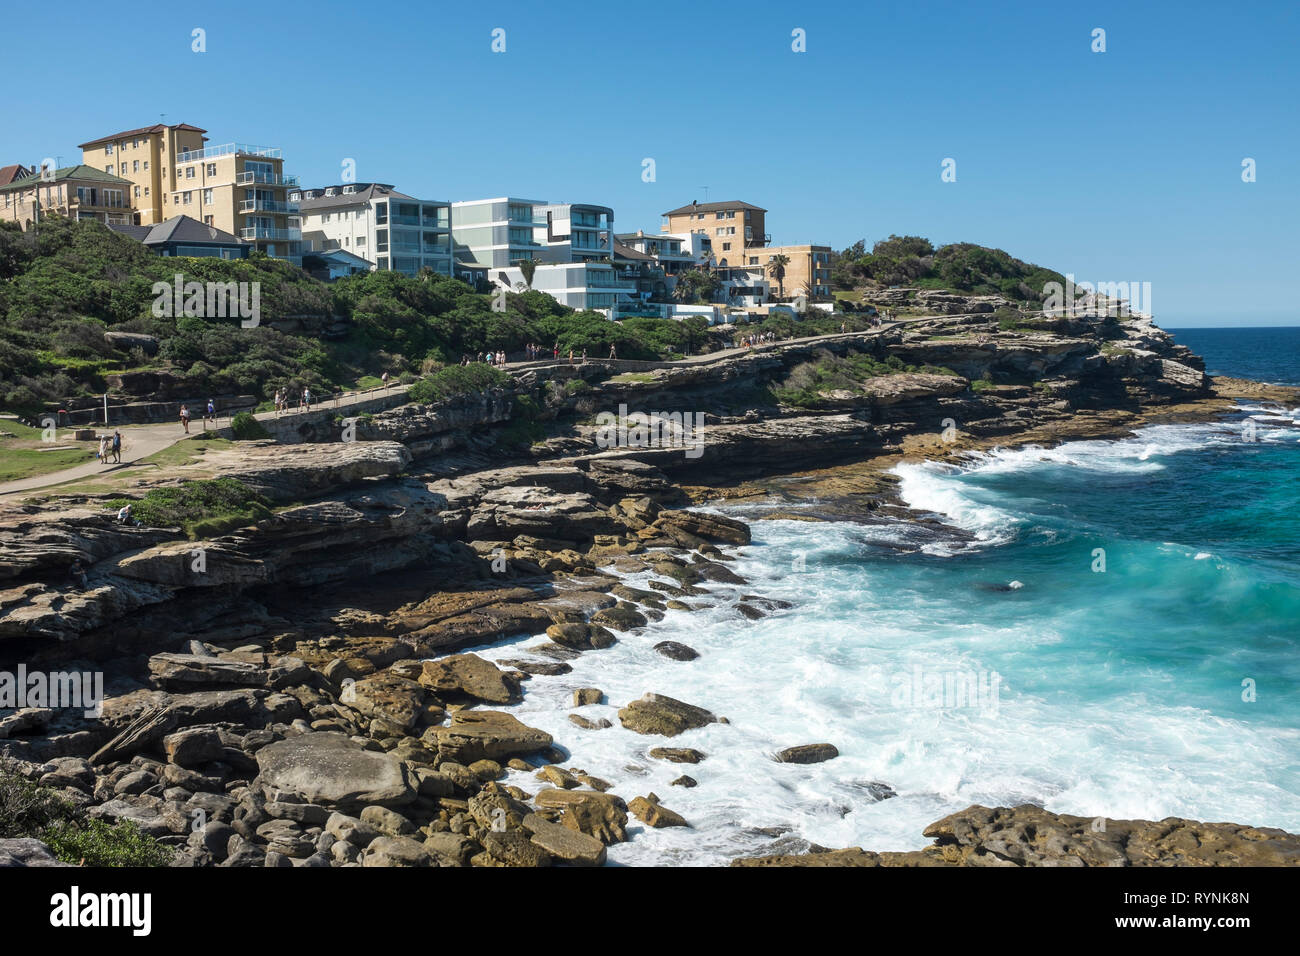 Coogee to Bondi coastal walk, Sydney, NSW, Australia Stock Photo